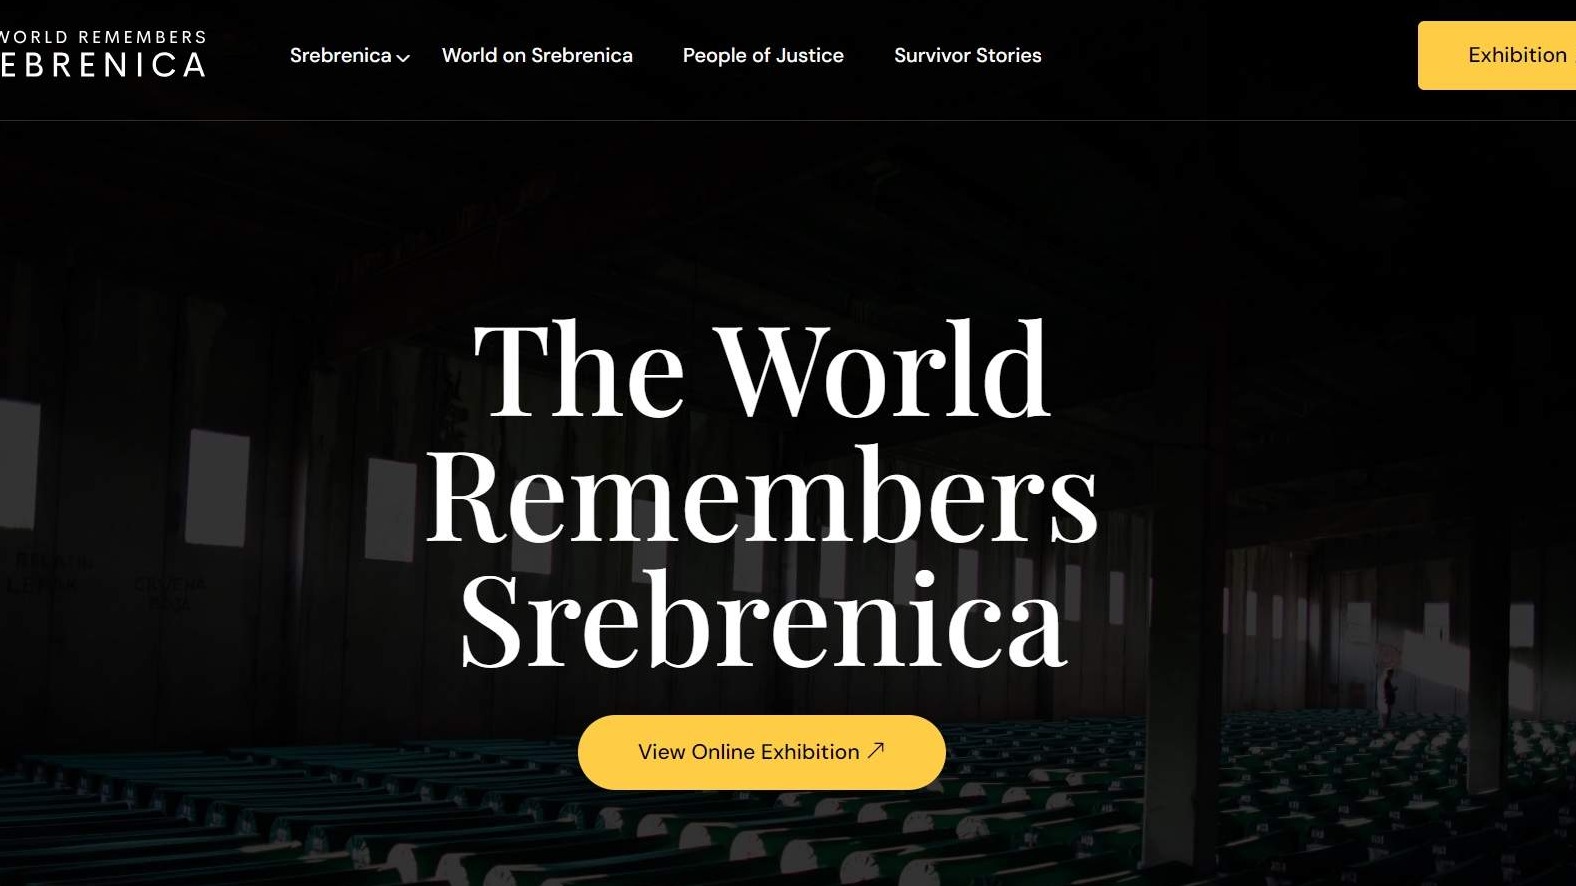 Projekat "Svijet pamti Srebrenicu": Odgovor na sistemsko poricanje genocida